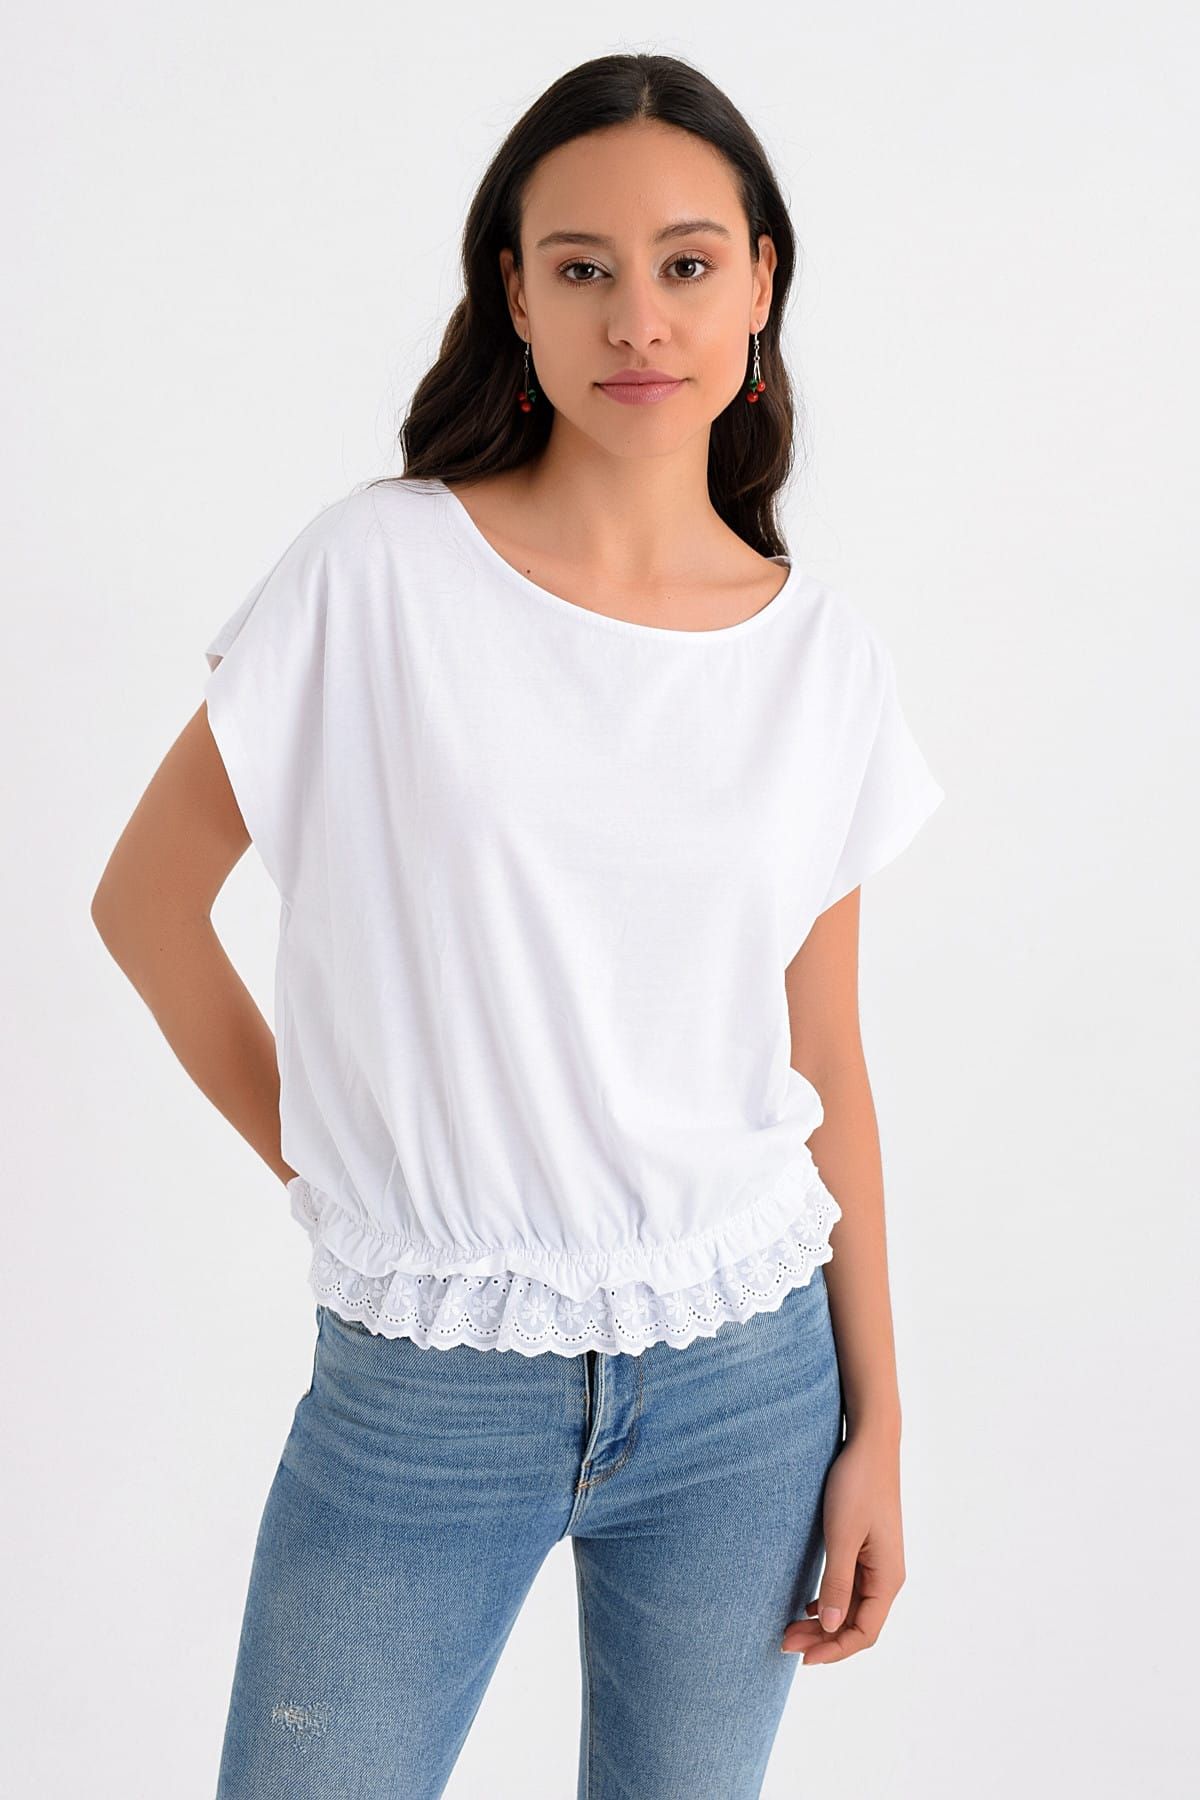 Hanna's Kadın Beyaz Bel Kısmı Lastikli Ve Dantelli T-shirt Hn1643